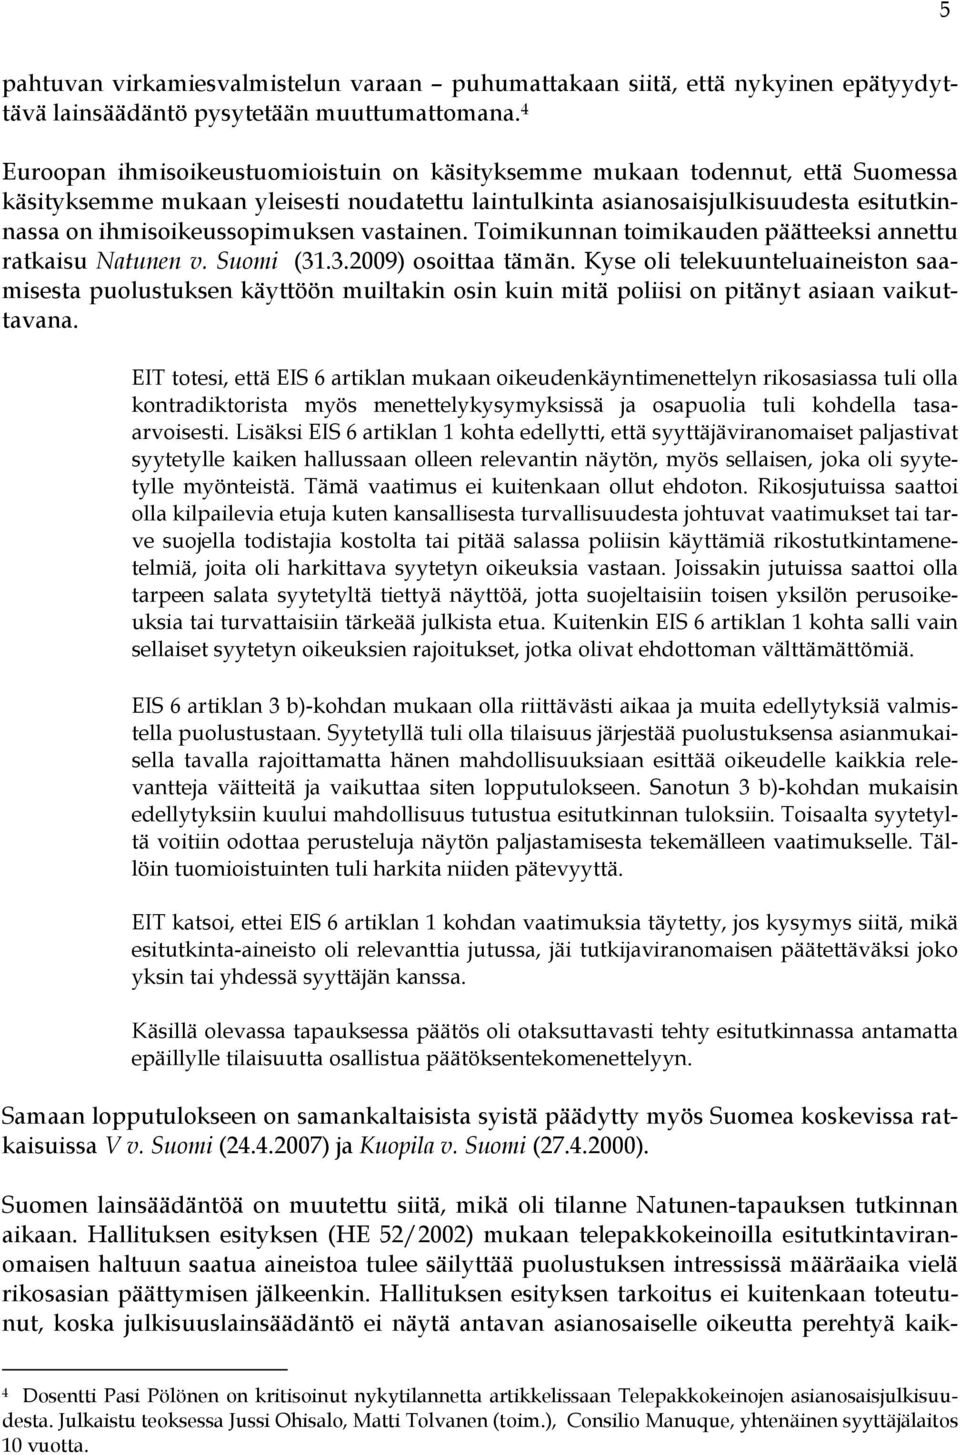 vastainen. Toimikunnan toimikauden päätteeksi annettu ratkaisu Natunen v. Suomi (31.3.2009) osoittaa tämän.